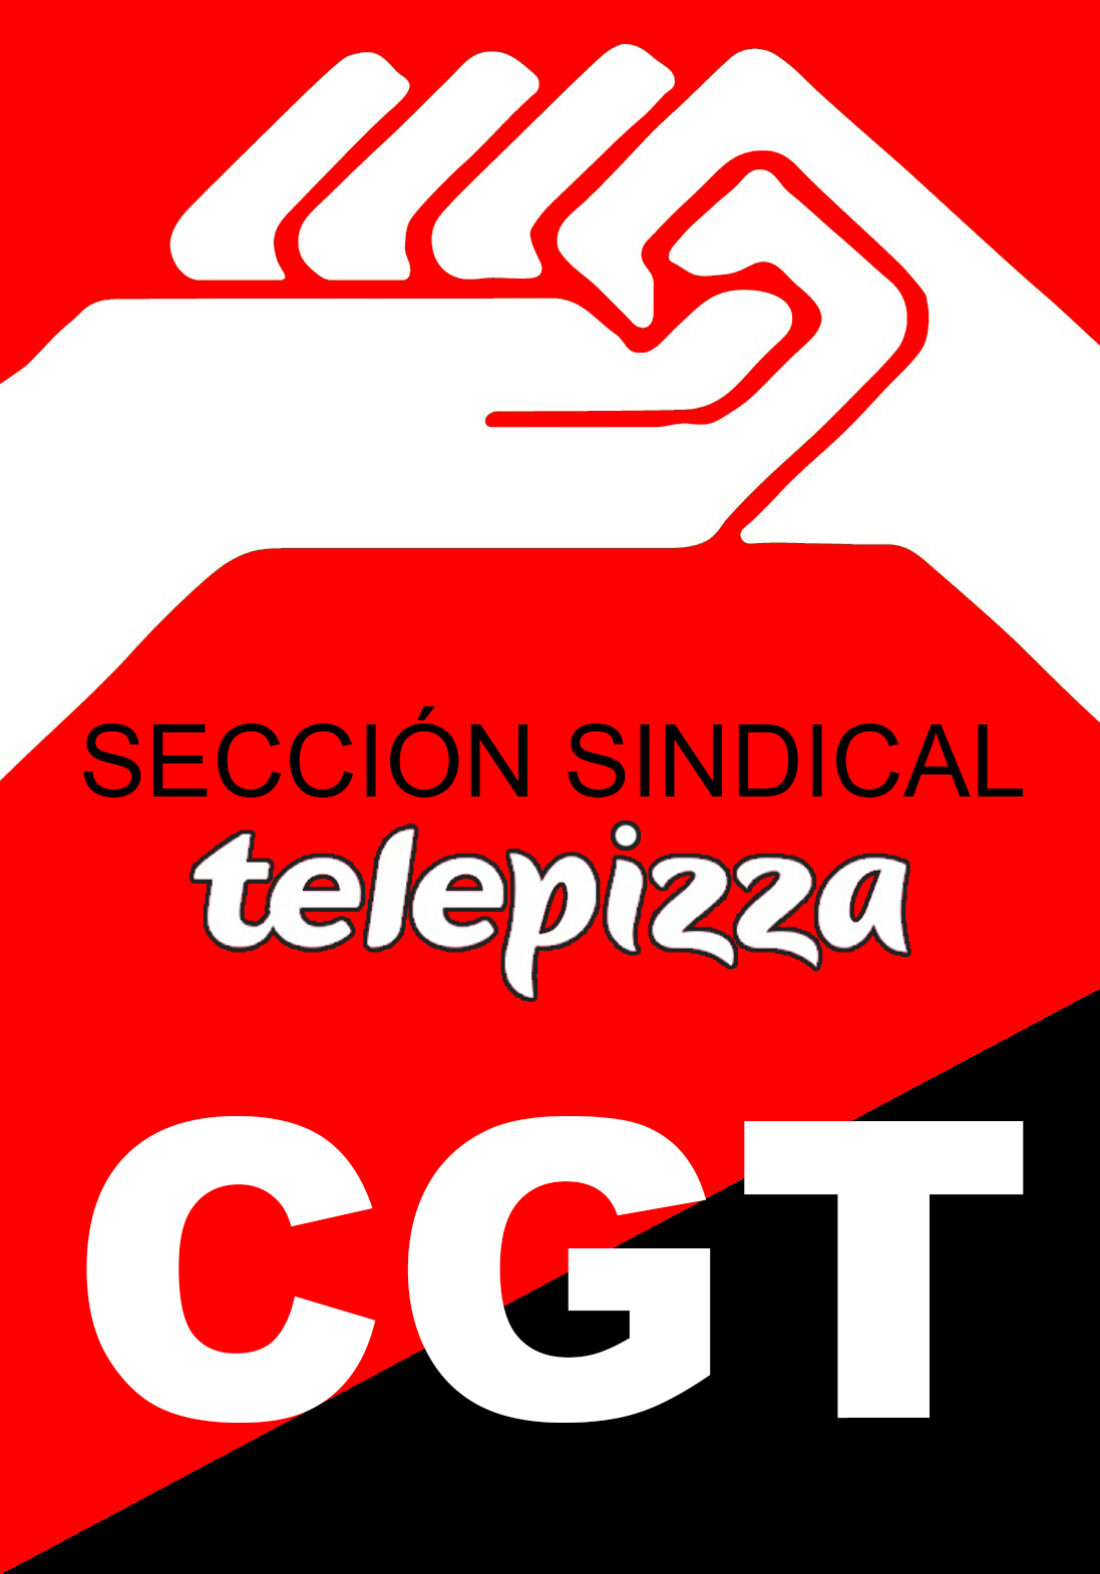 Telepizza sigue negándose a pagar el SMI de forma integral